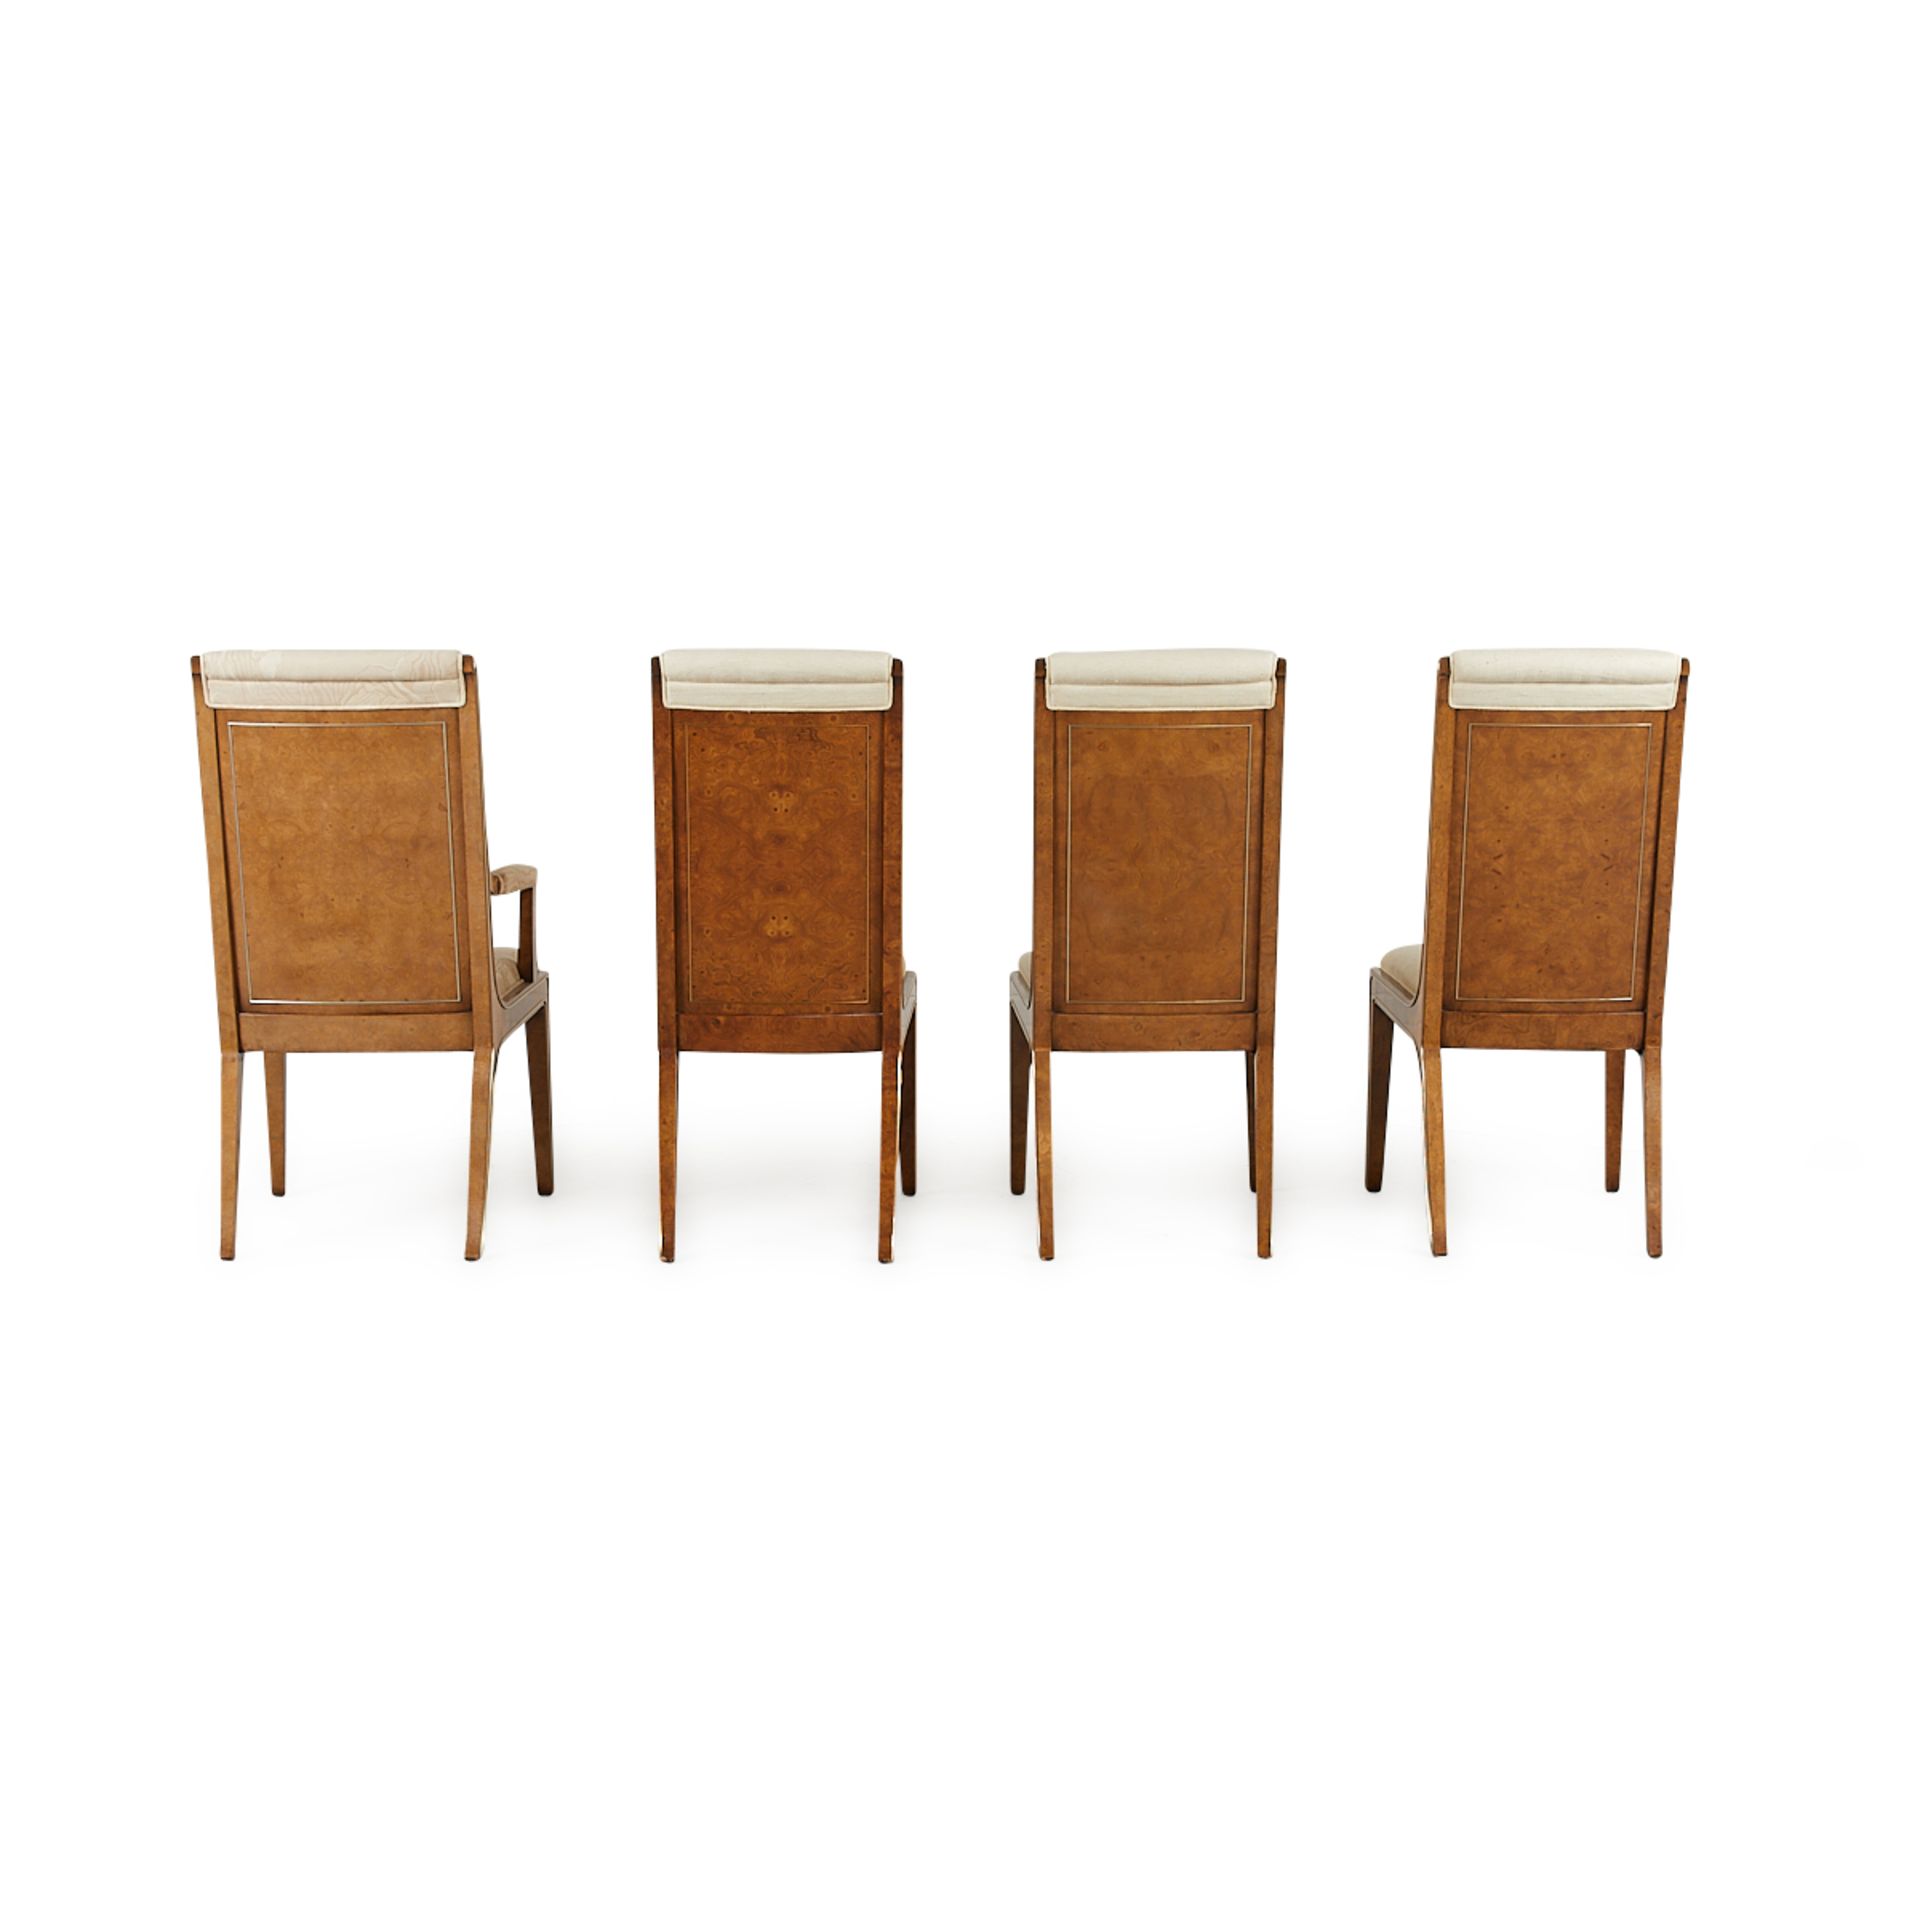 Set 8 Bernhard Rohne MasterCraft Burled Chairs - Image 5 of 24